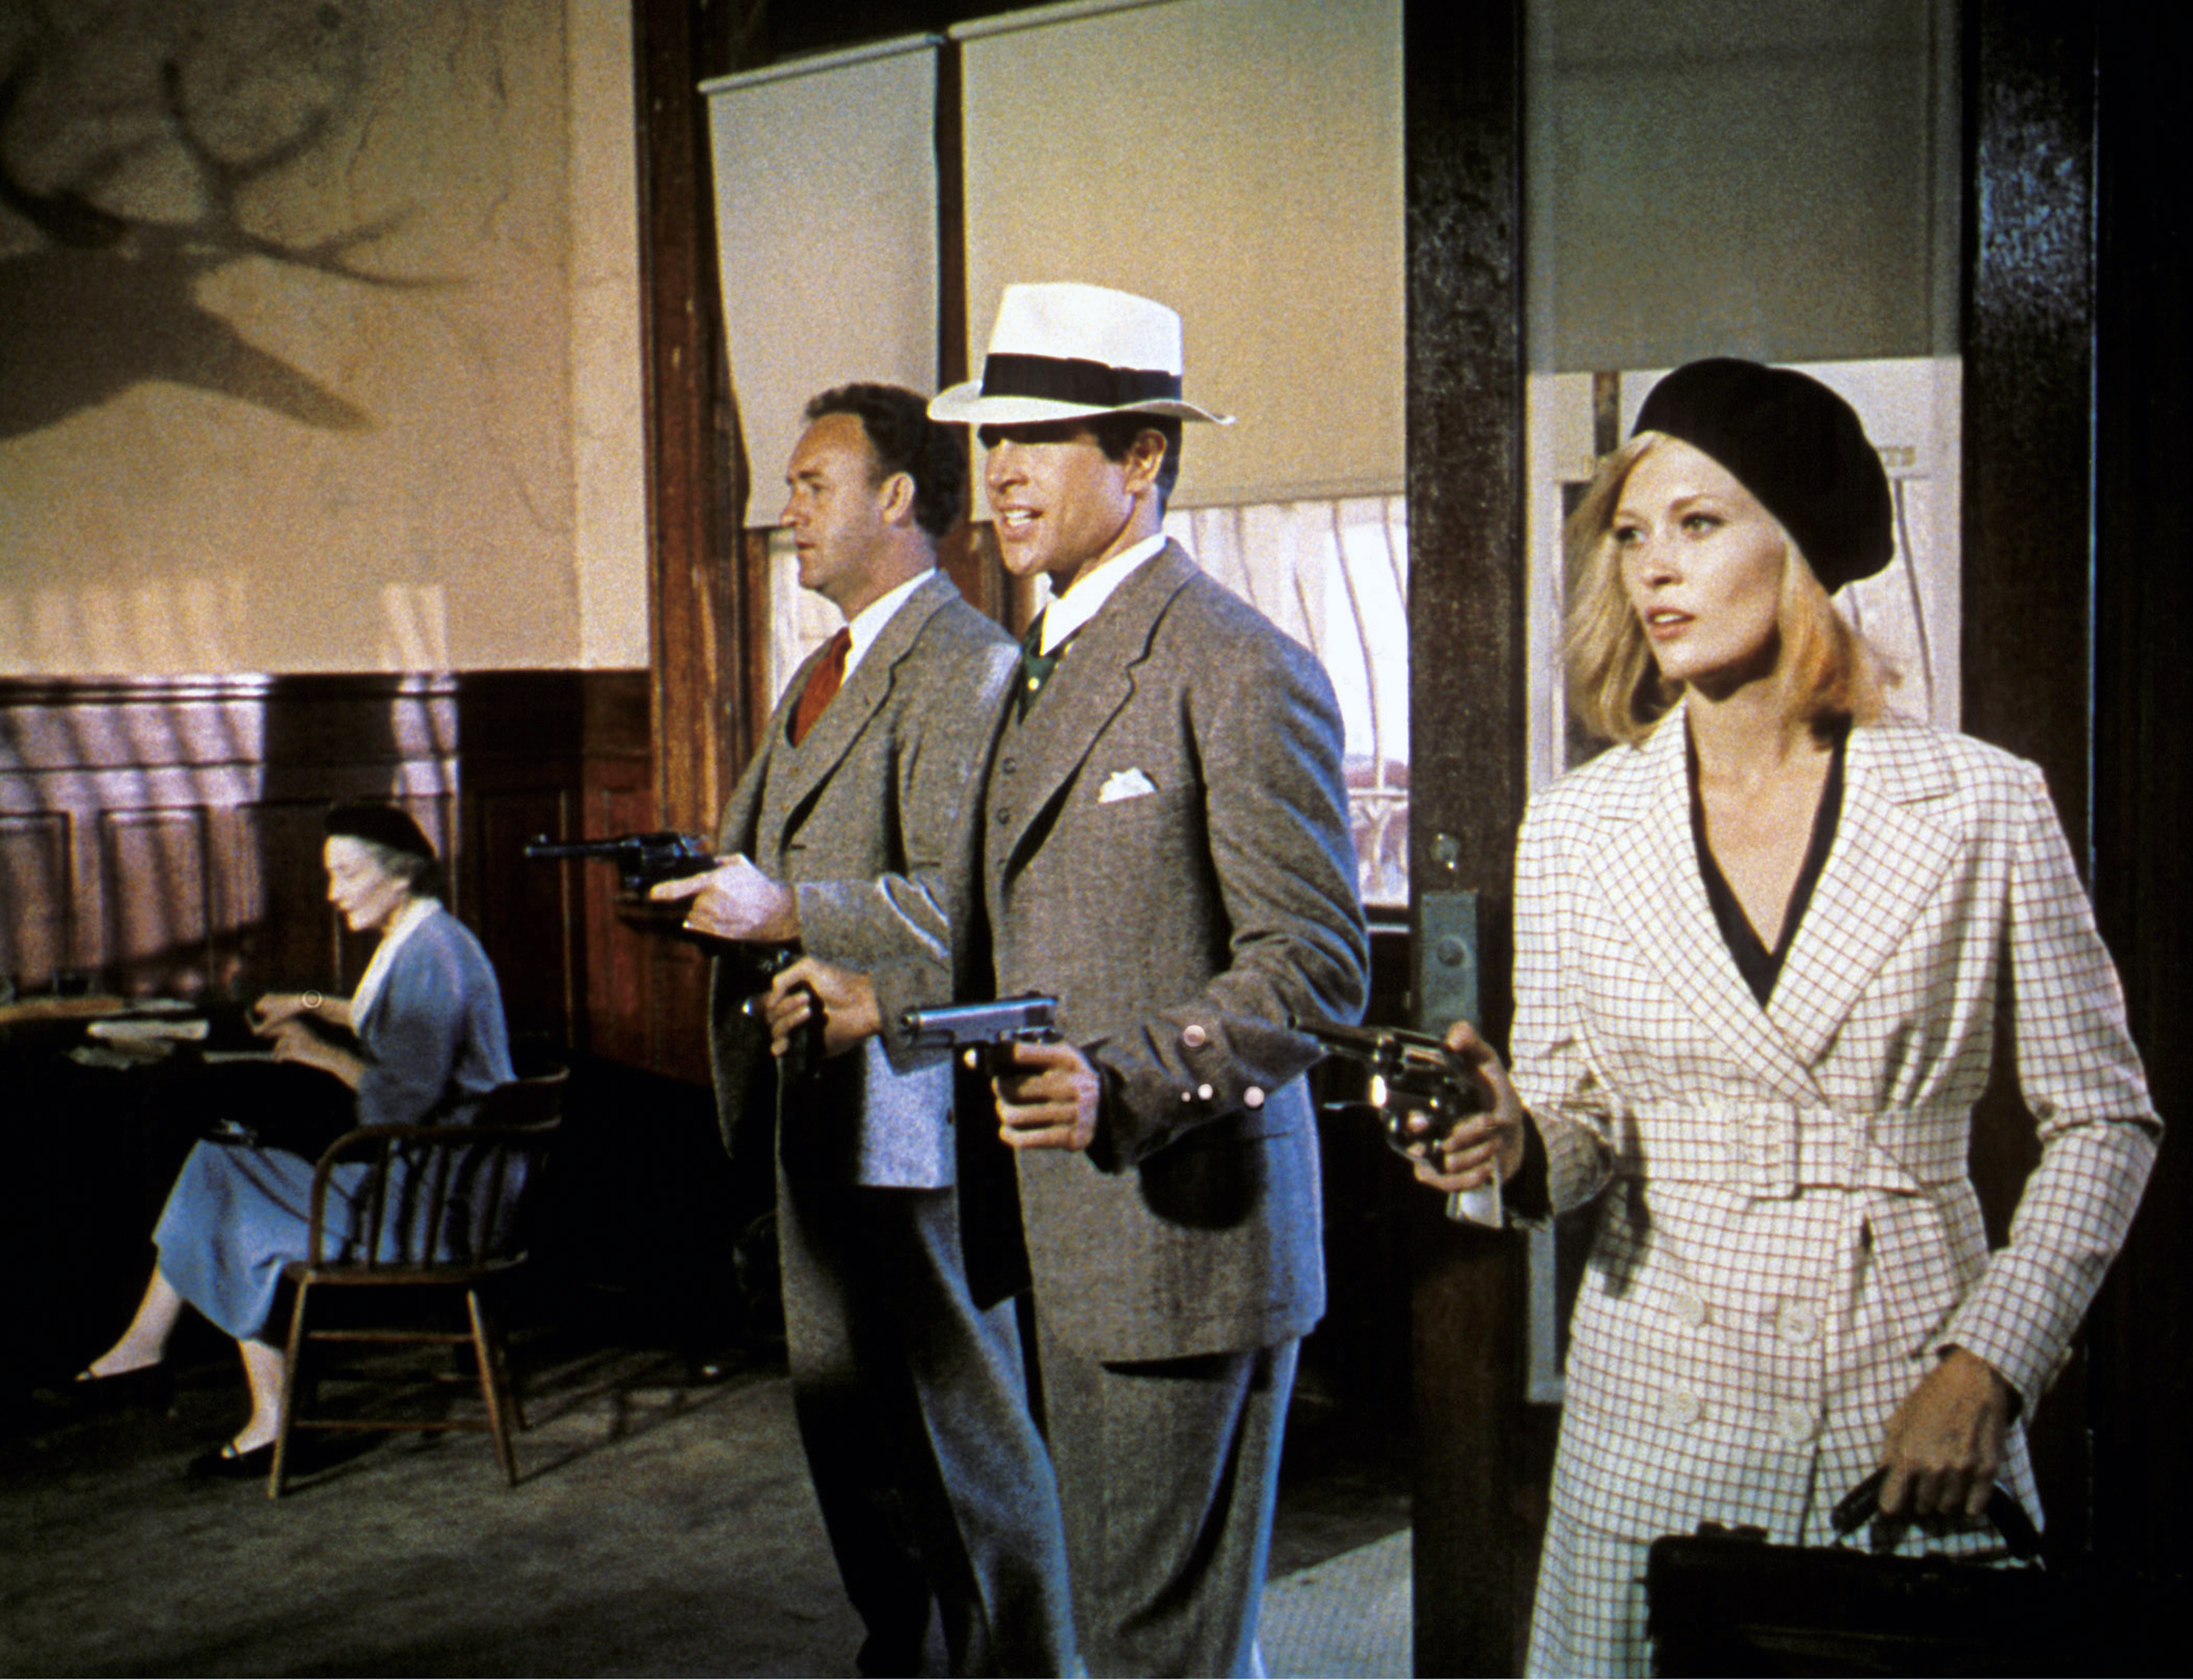 Les acteurs américains Gene Hackman, Warren Beatty et Faye Dunaway sur le tournage de "Bonnie and Clyde" | Source : Getty Images